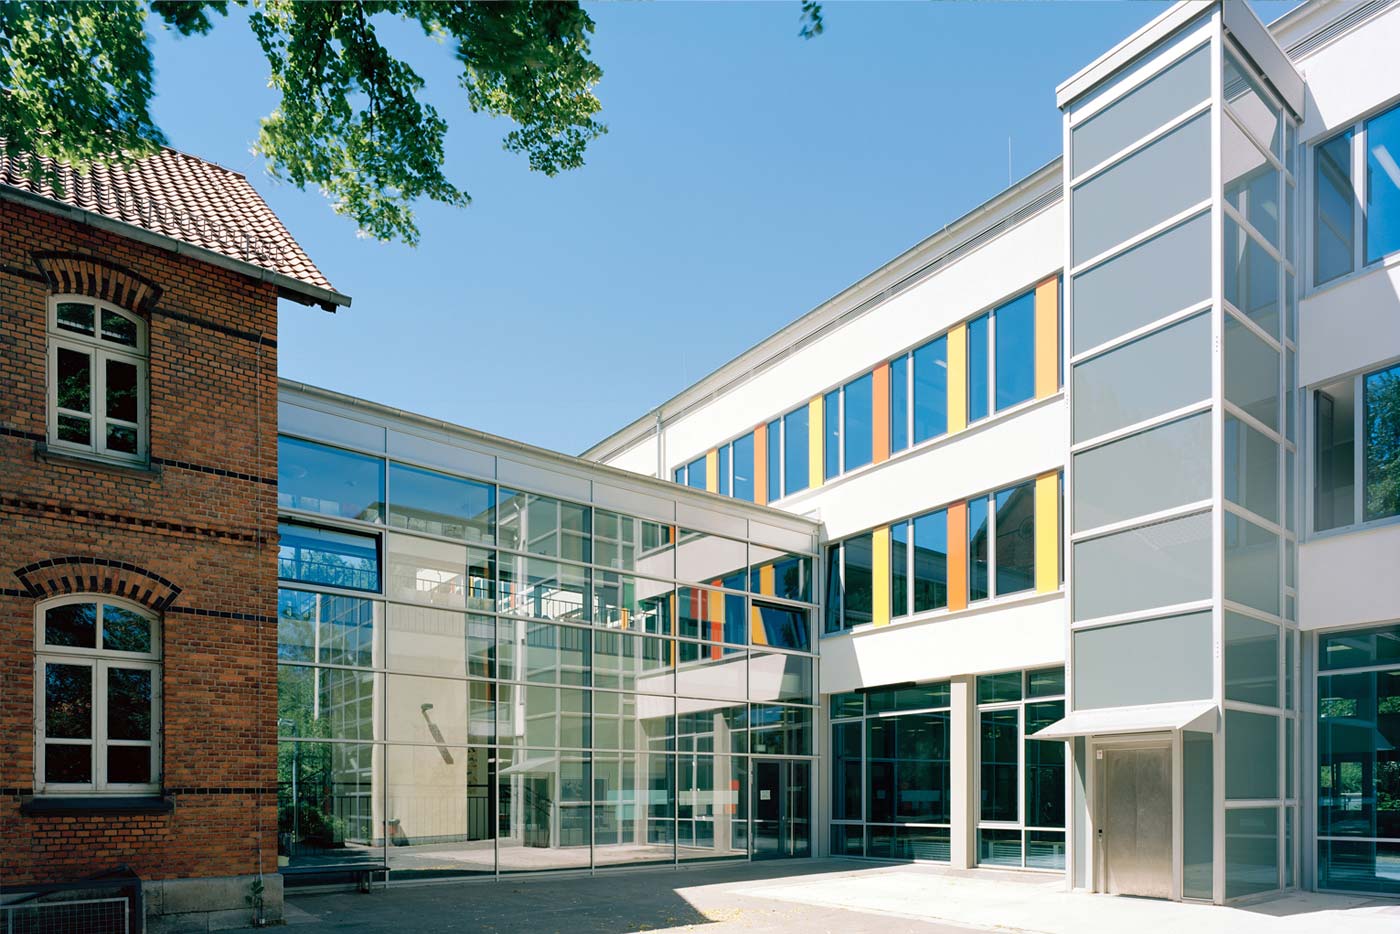 Bild von der Aussenansicht der Hoffmann von Fallersleben Schule in Braunschweig - header